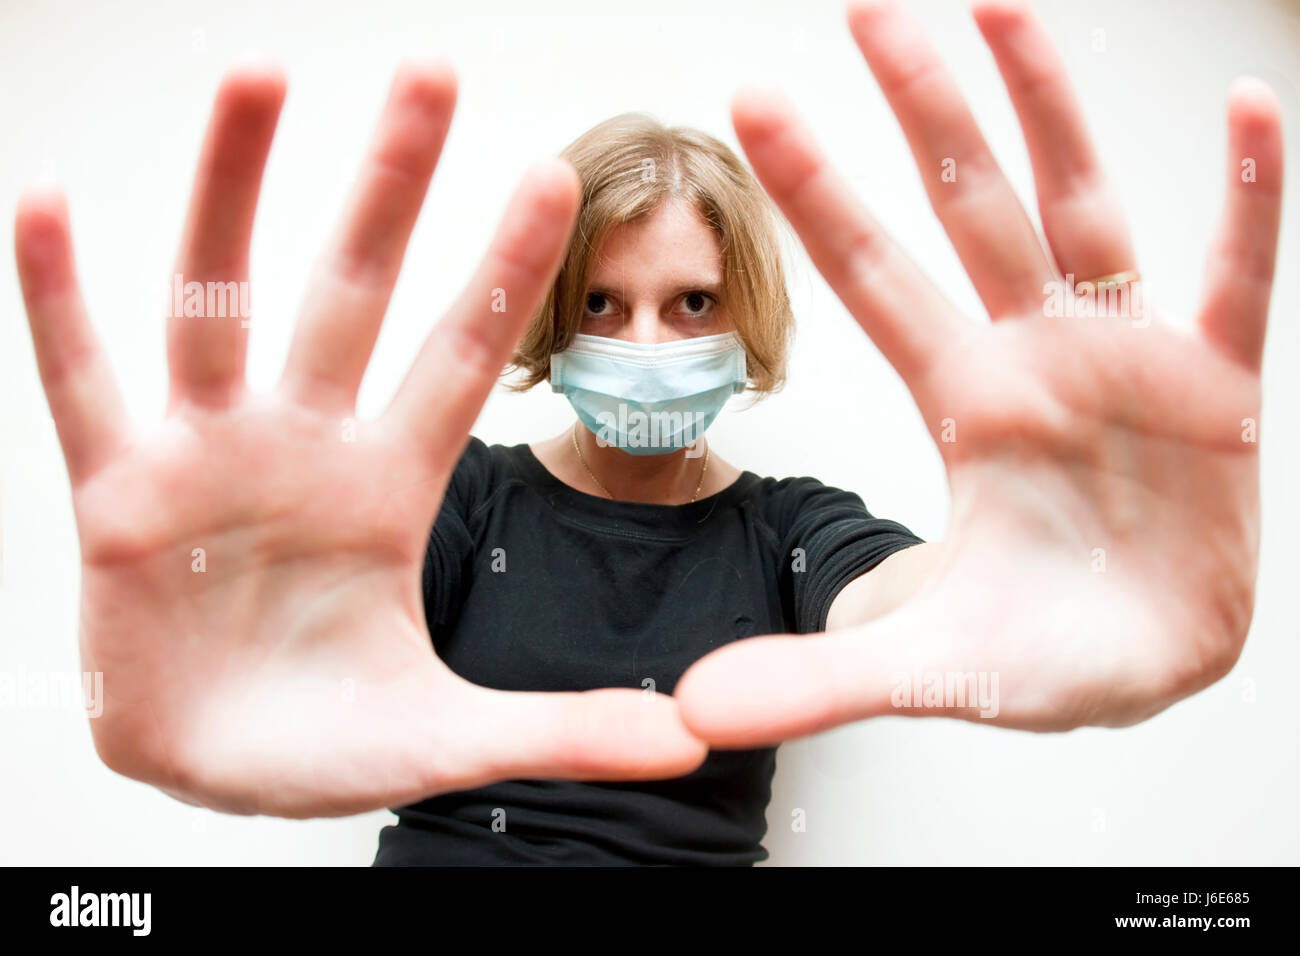 Virus de la grippe santé femme masque femme main mains médical médicinalement catarrhe froid Banque D'Images